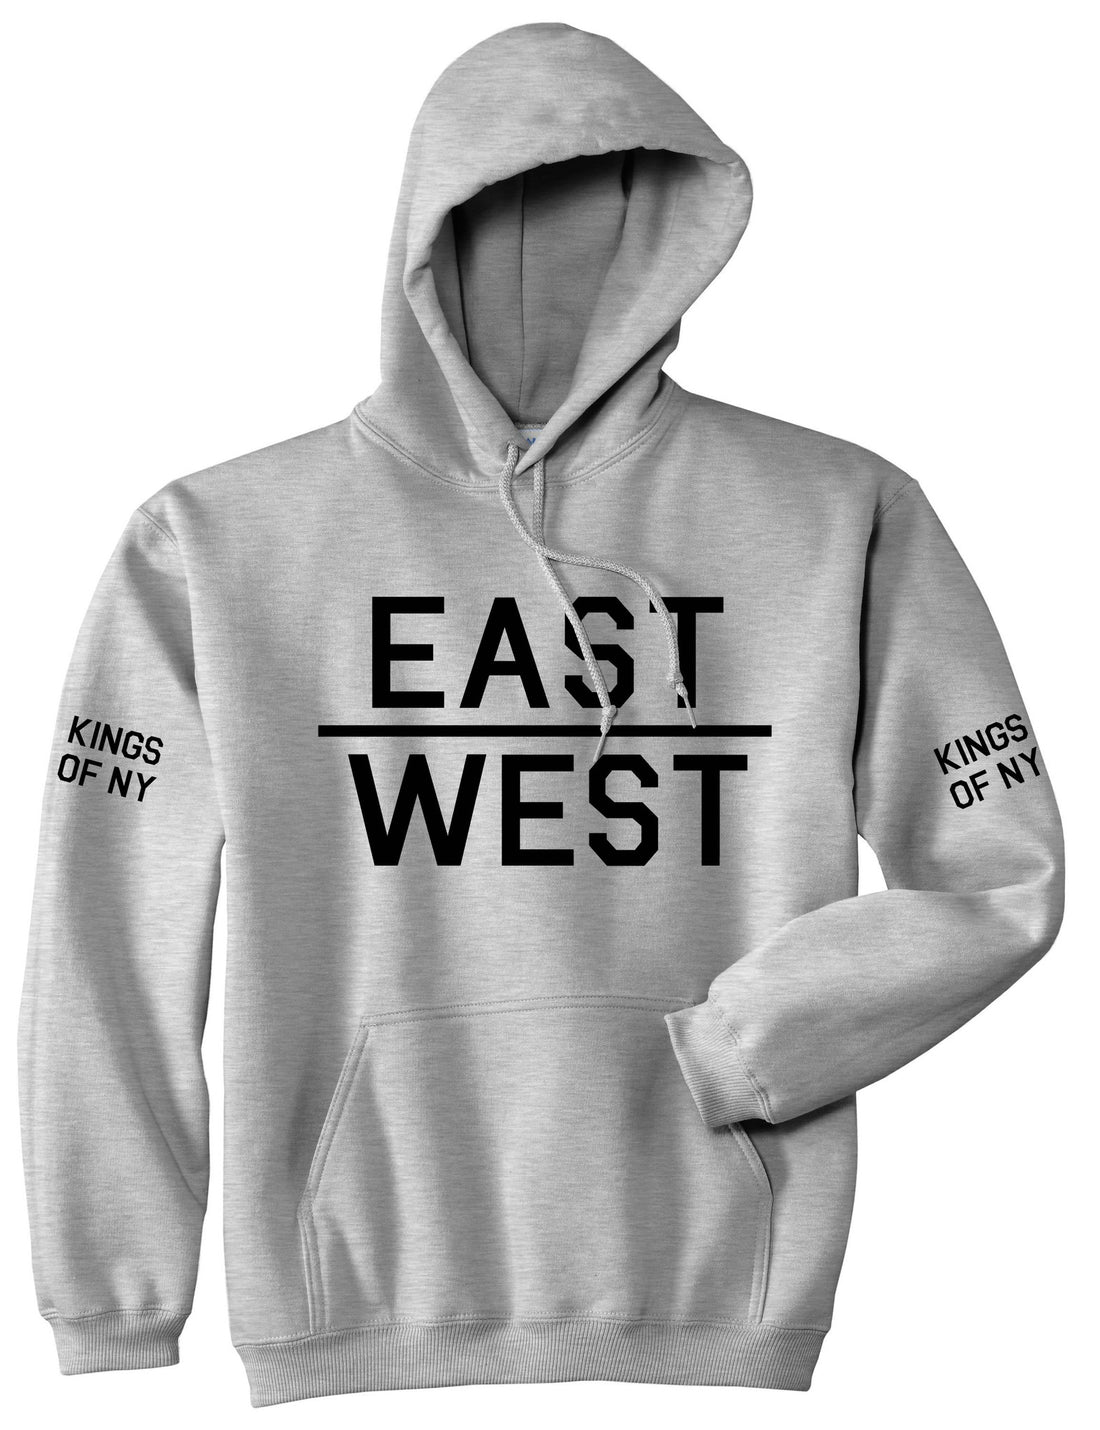 East West Pullover Hoodie Hoody in Grey by Kings Of NY